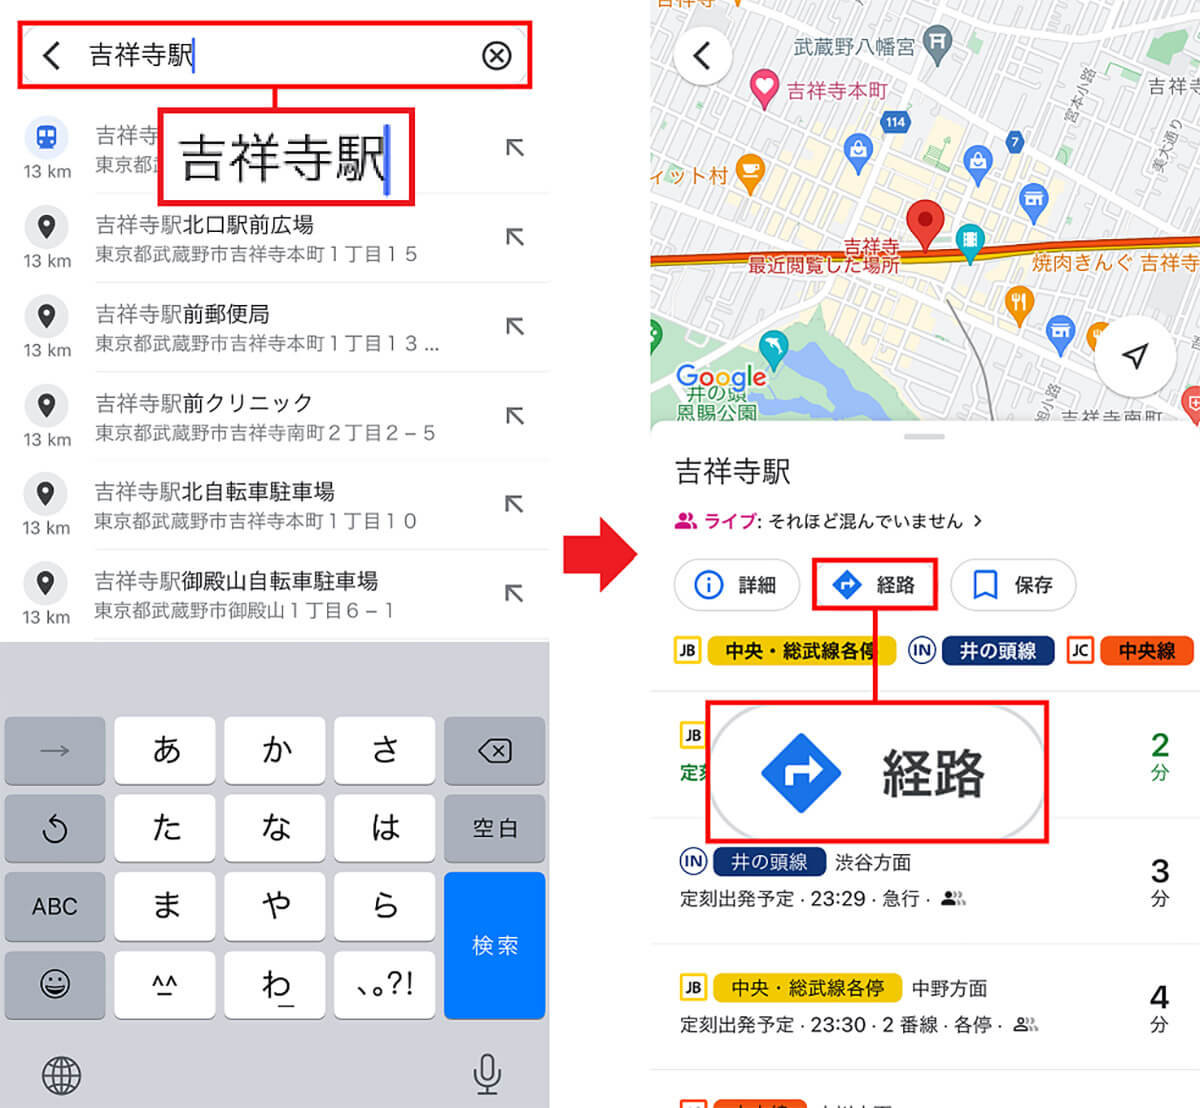 「Googleマップ」でルート情報ウィジェットに乗り換え経路を登録する方法1